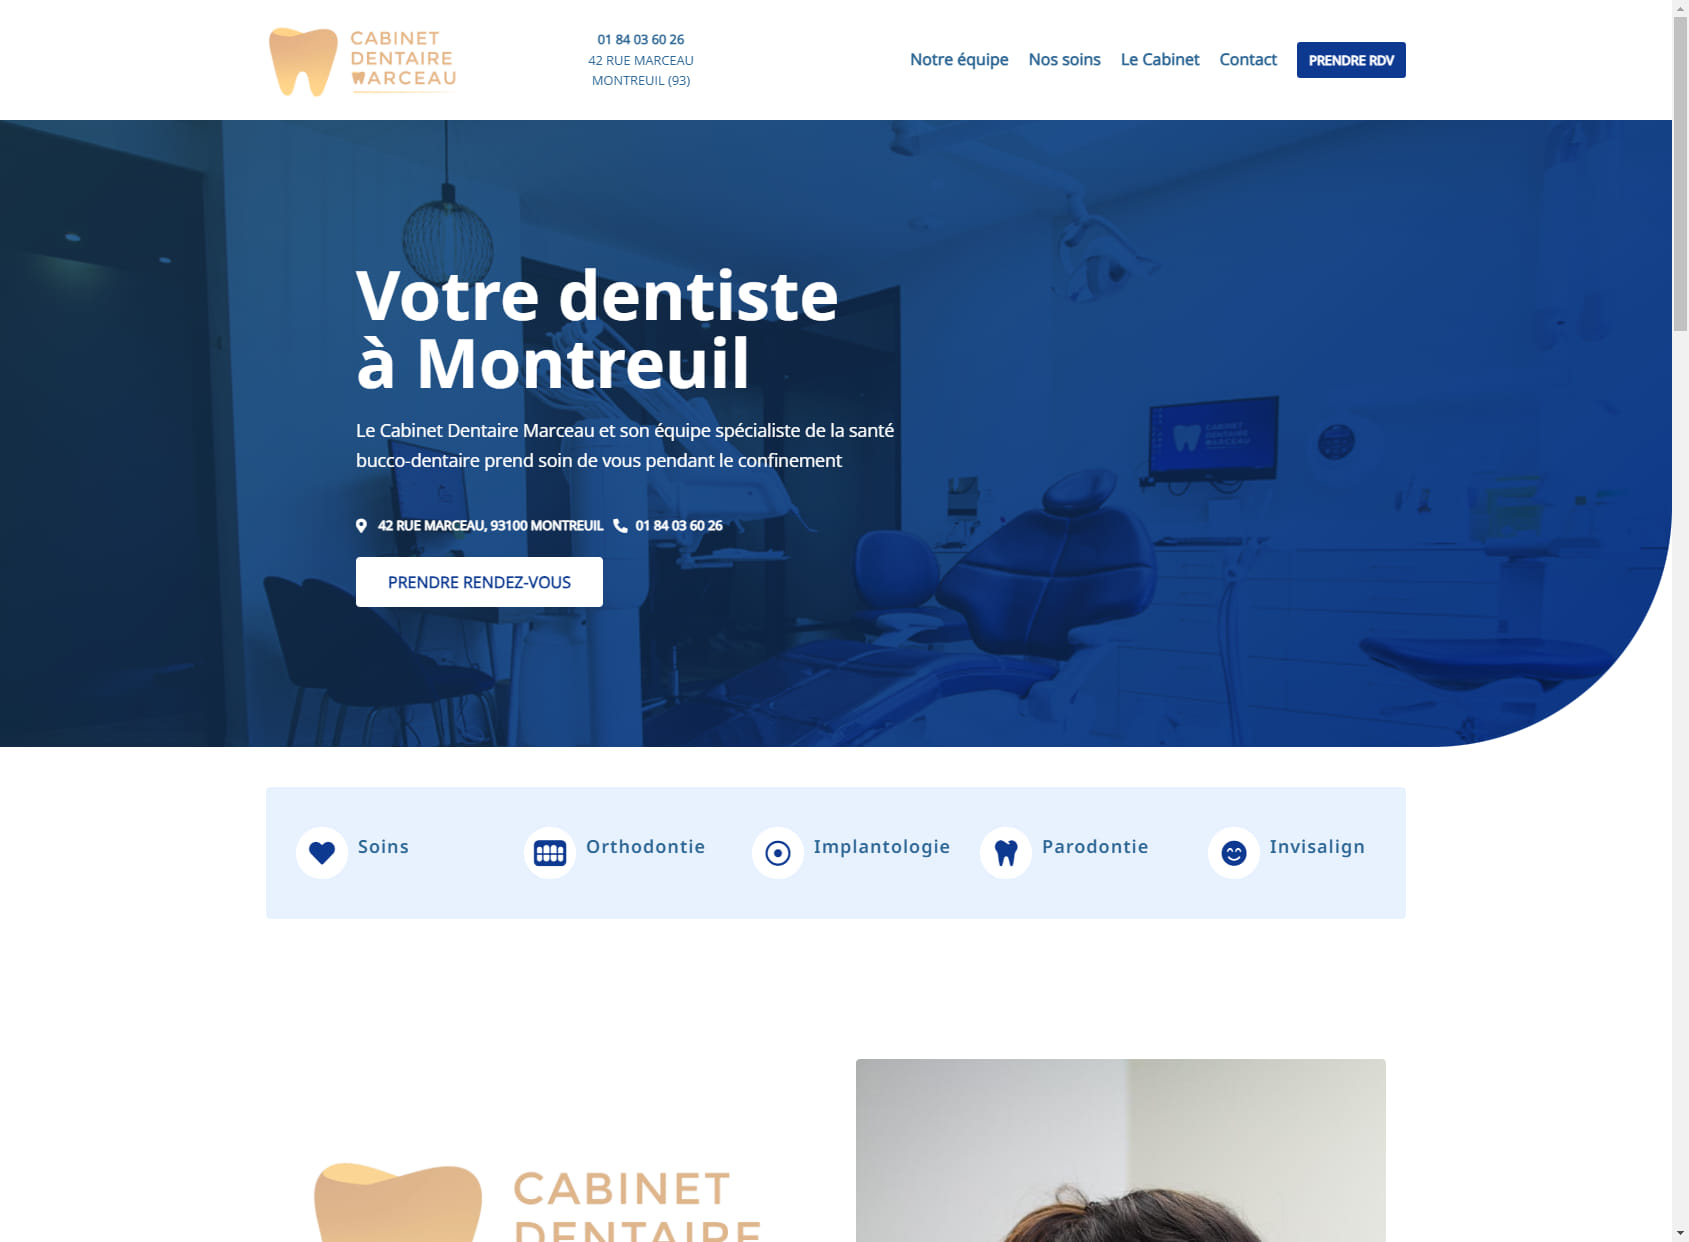 Cabinet Dentaire de Marceau - Dentiste Montreuil